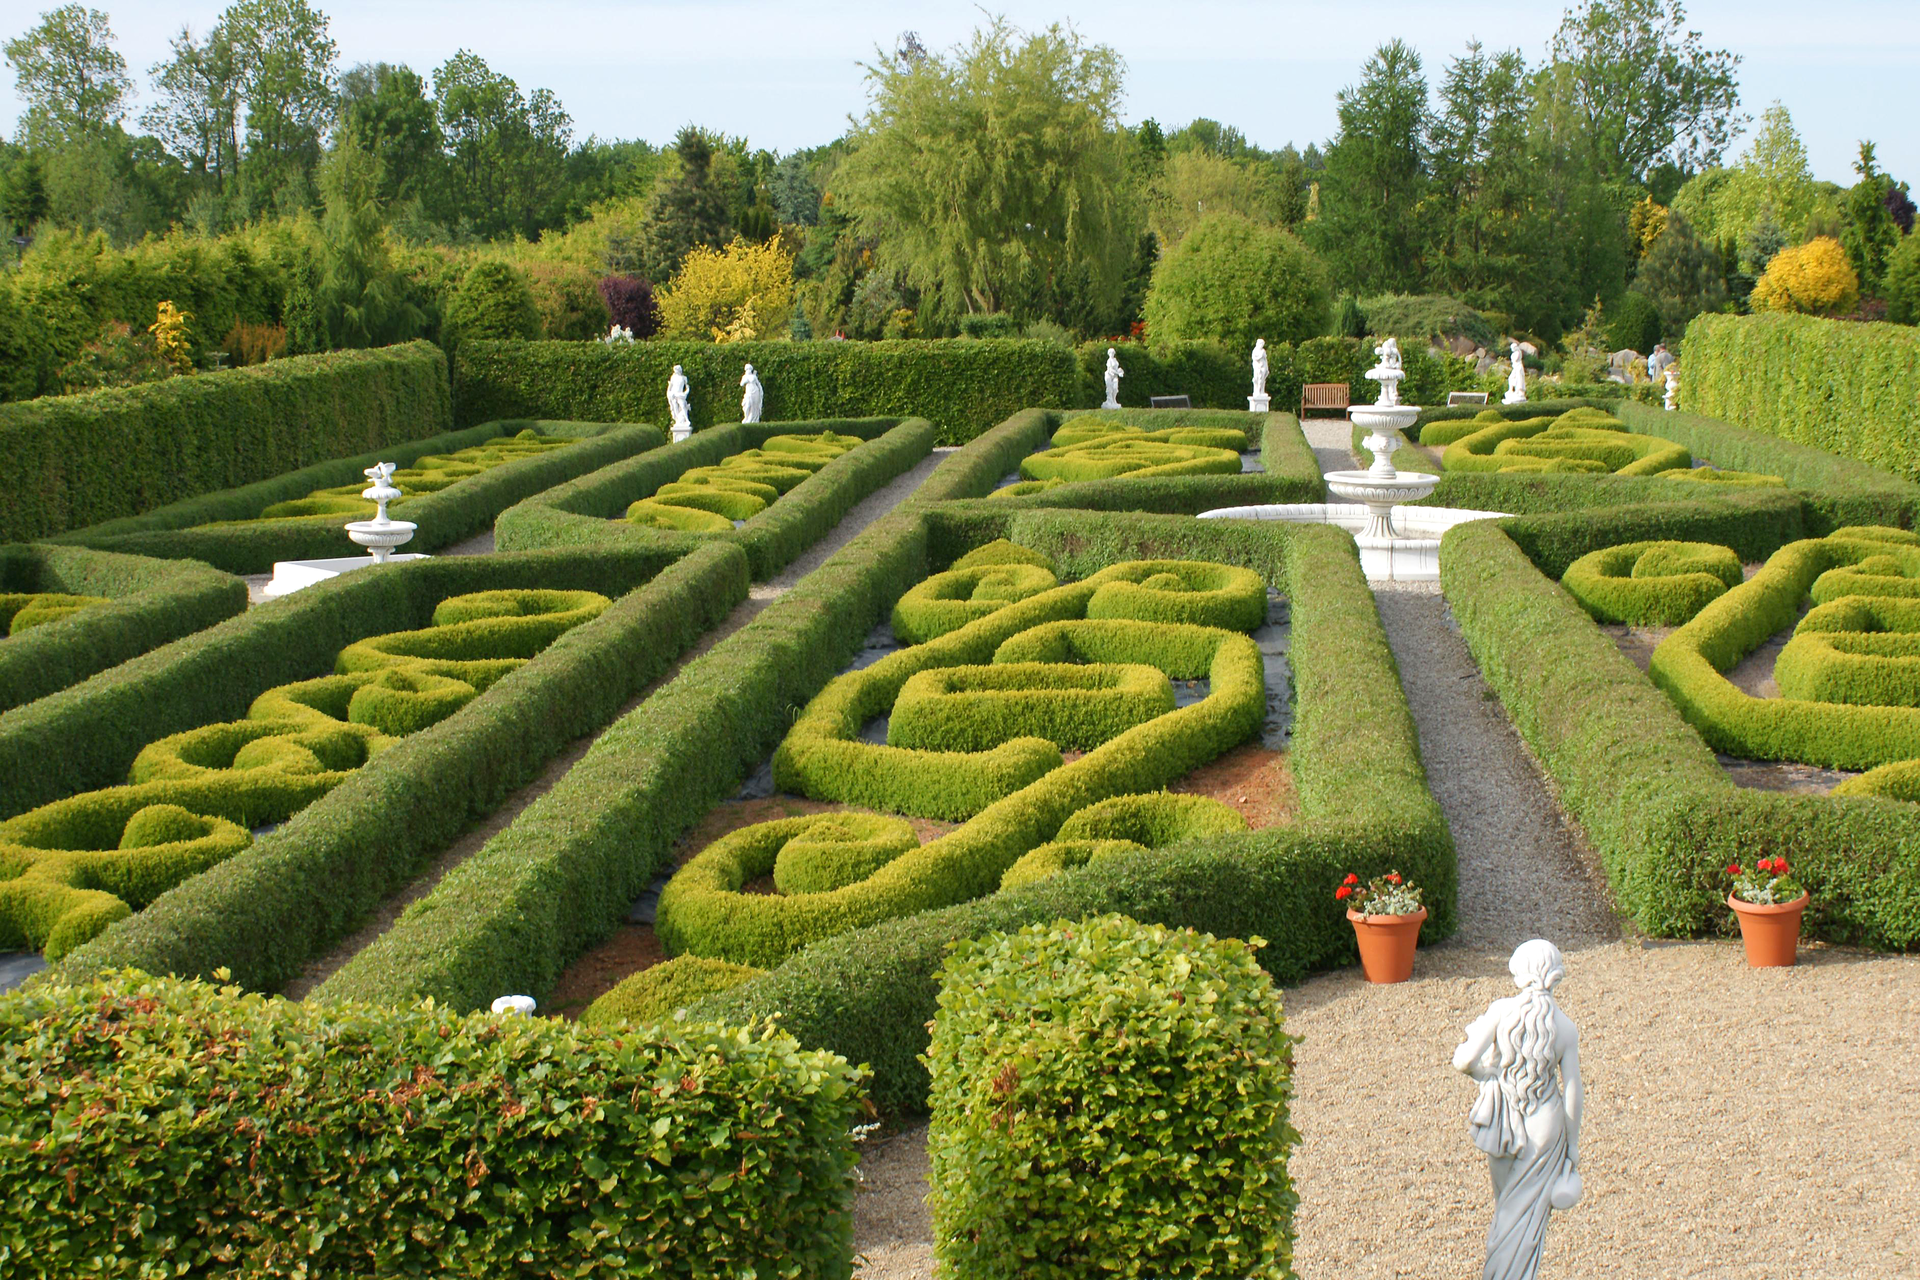 Fotografia prezentuje ogród francuski ze starannie formowanymi wzorami z roślin.